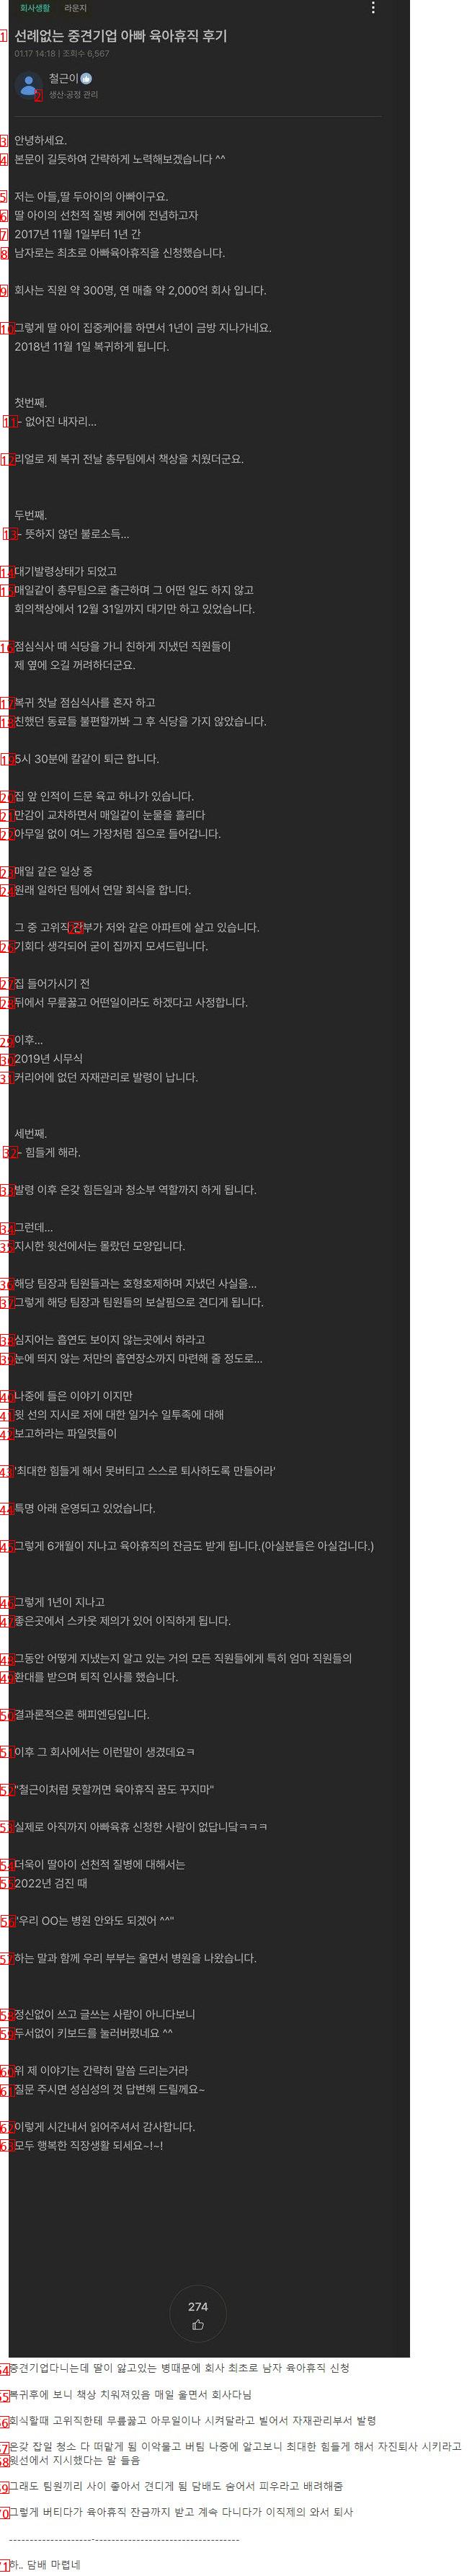 한국에서 아빠가 육아휴직을 쓰면 벌어지는 일